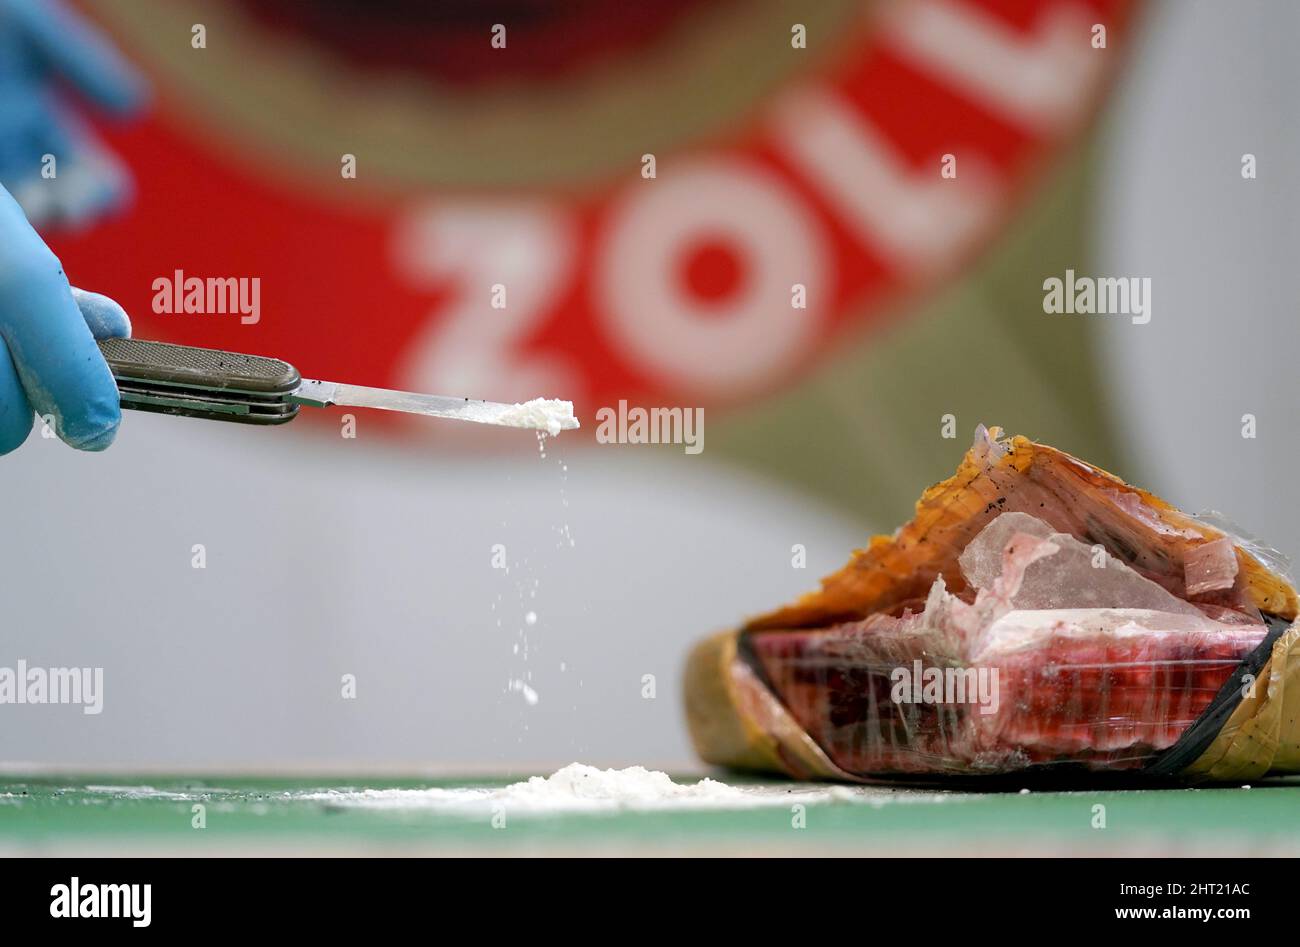 Made cocaine immagini e fotografie stock ad alta risoluzione - Alamy